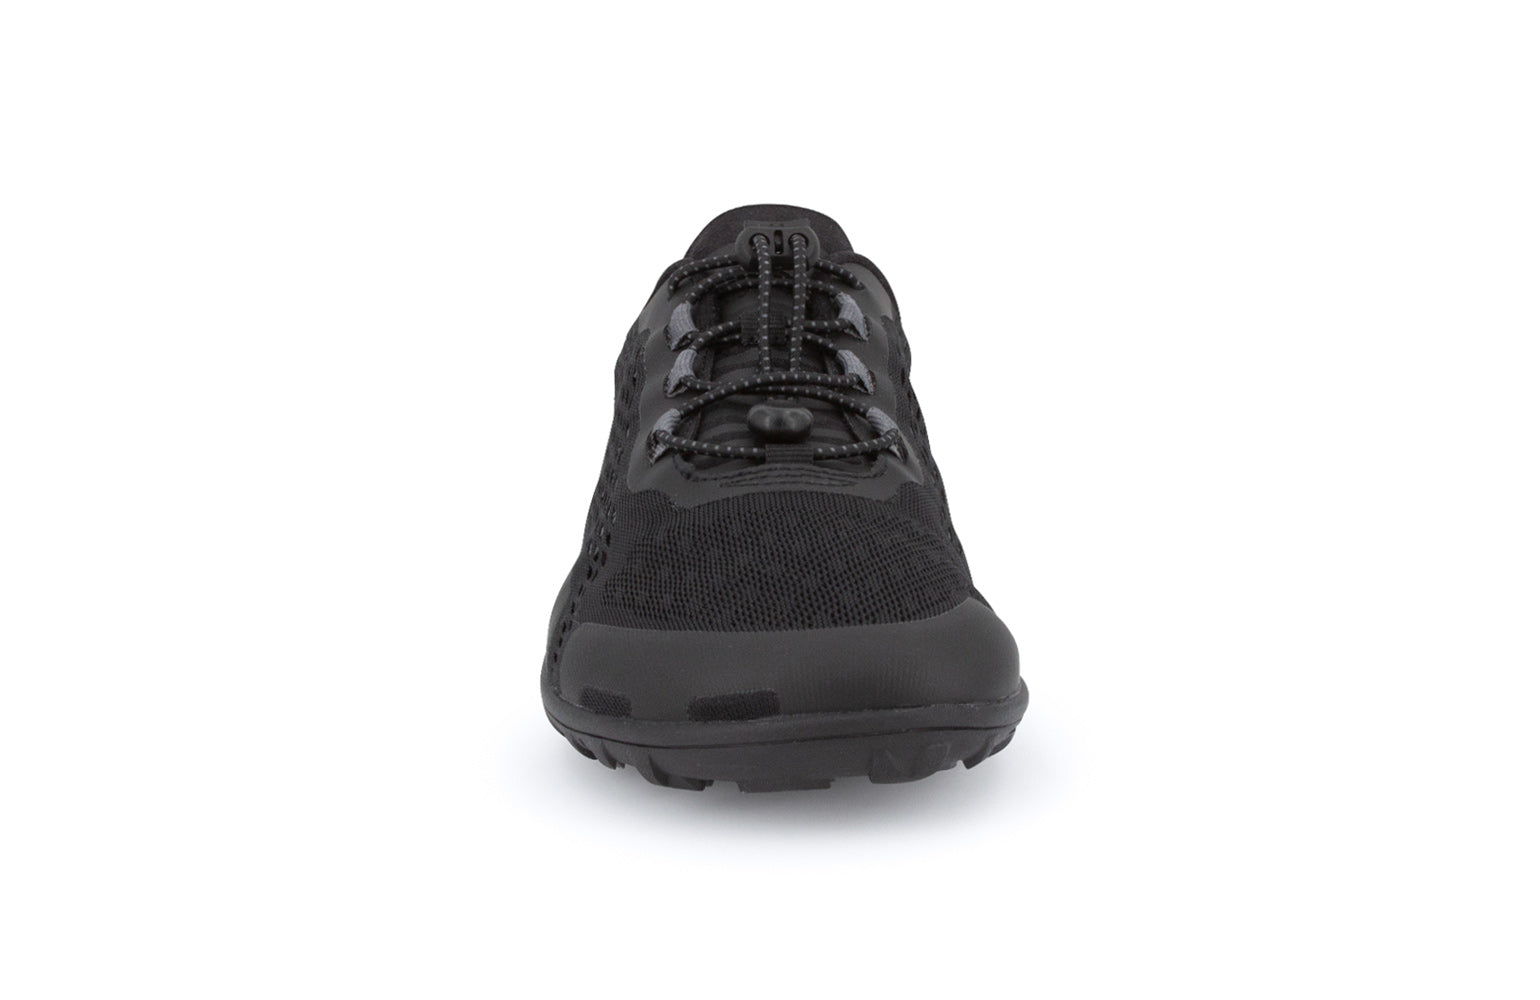 Xero Shoes Aqua X Sport Women barfods vandsko til kvinder i farven black, forfra